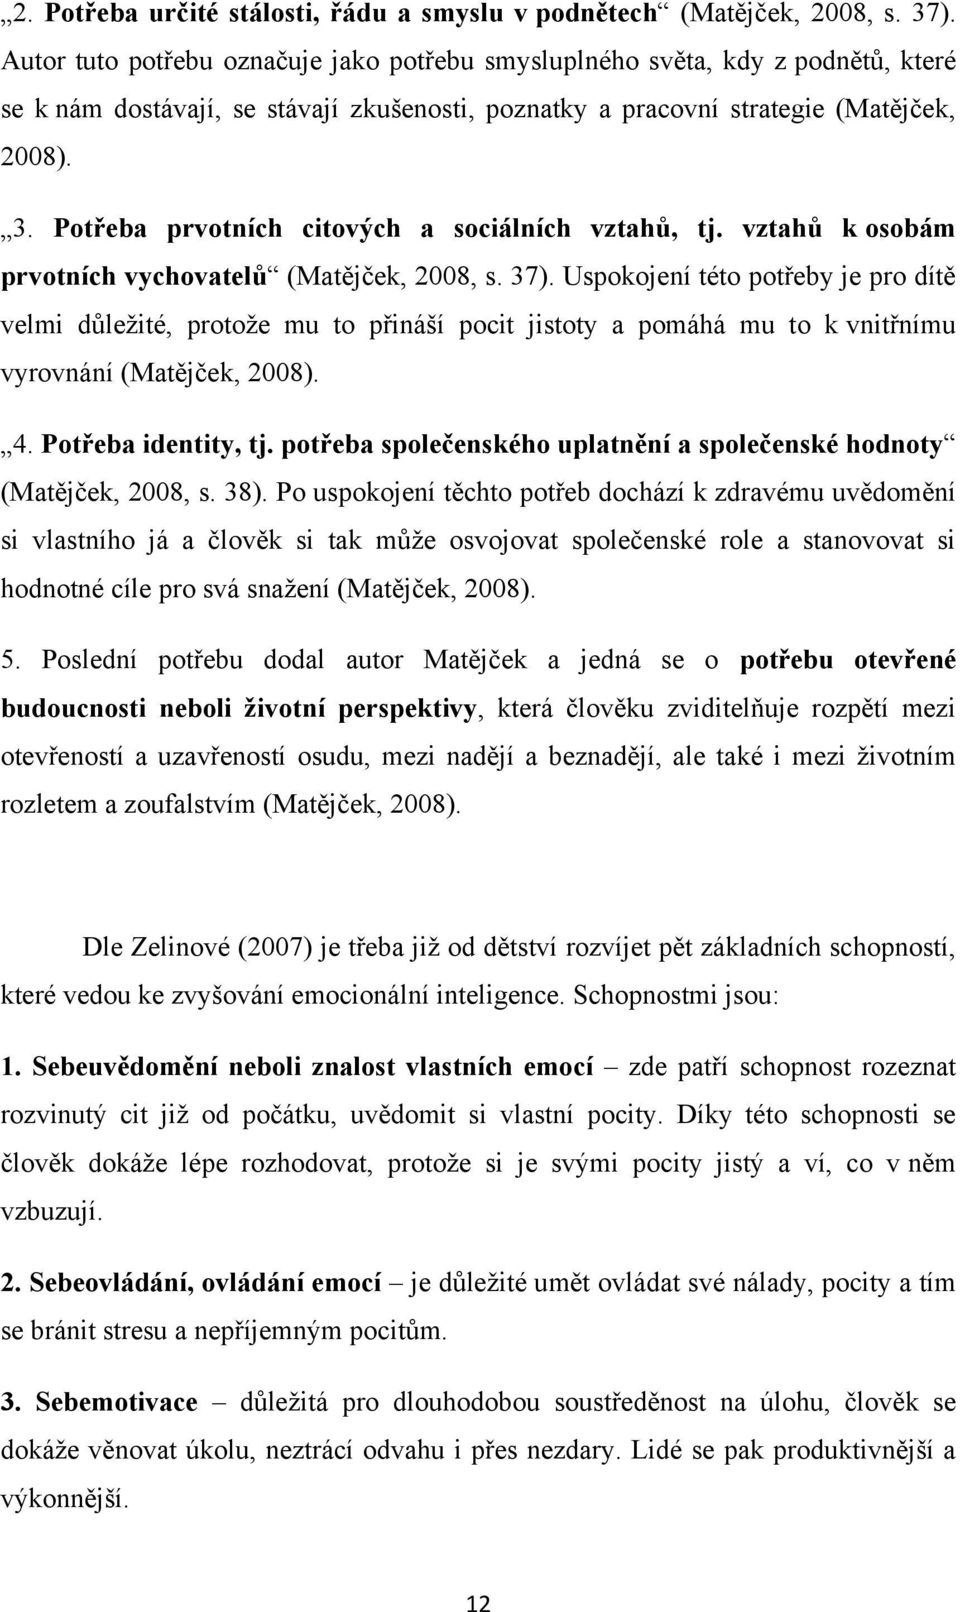 Potřeba prvotních citových a sociálních vztahů, tj. vztahů k osobám prvotních vychovatelů (Matějček, 2008, s. 37).